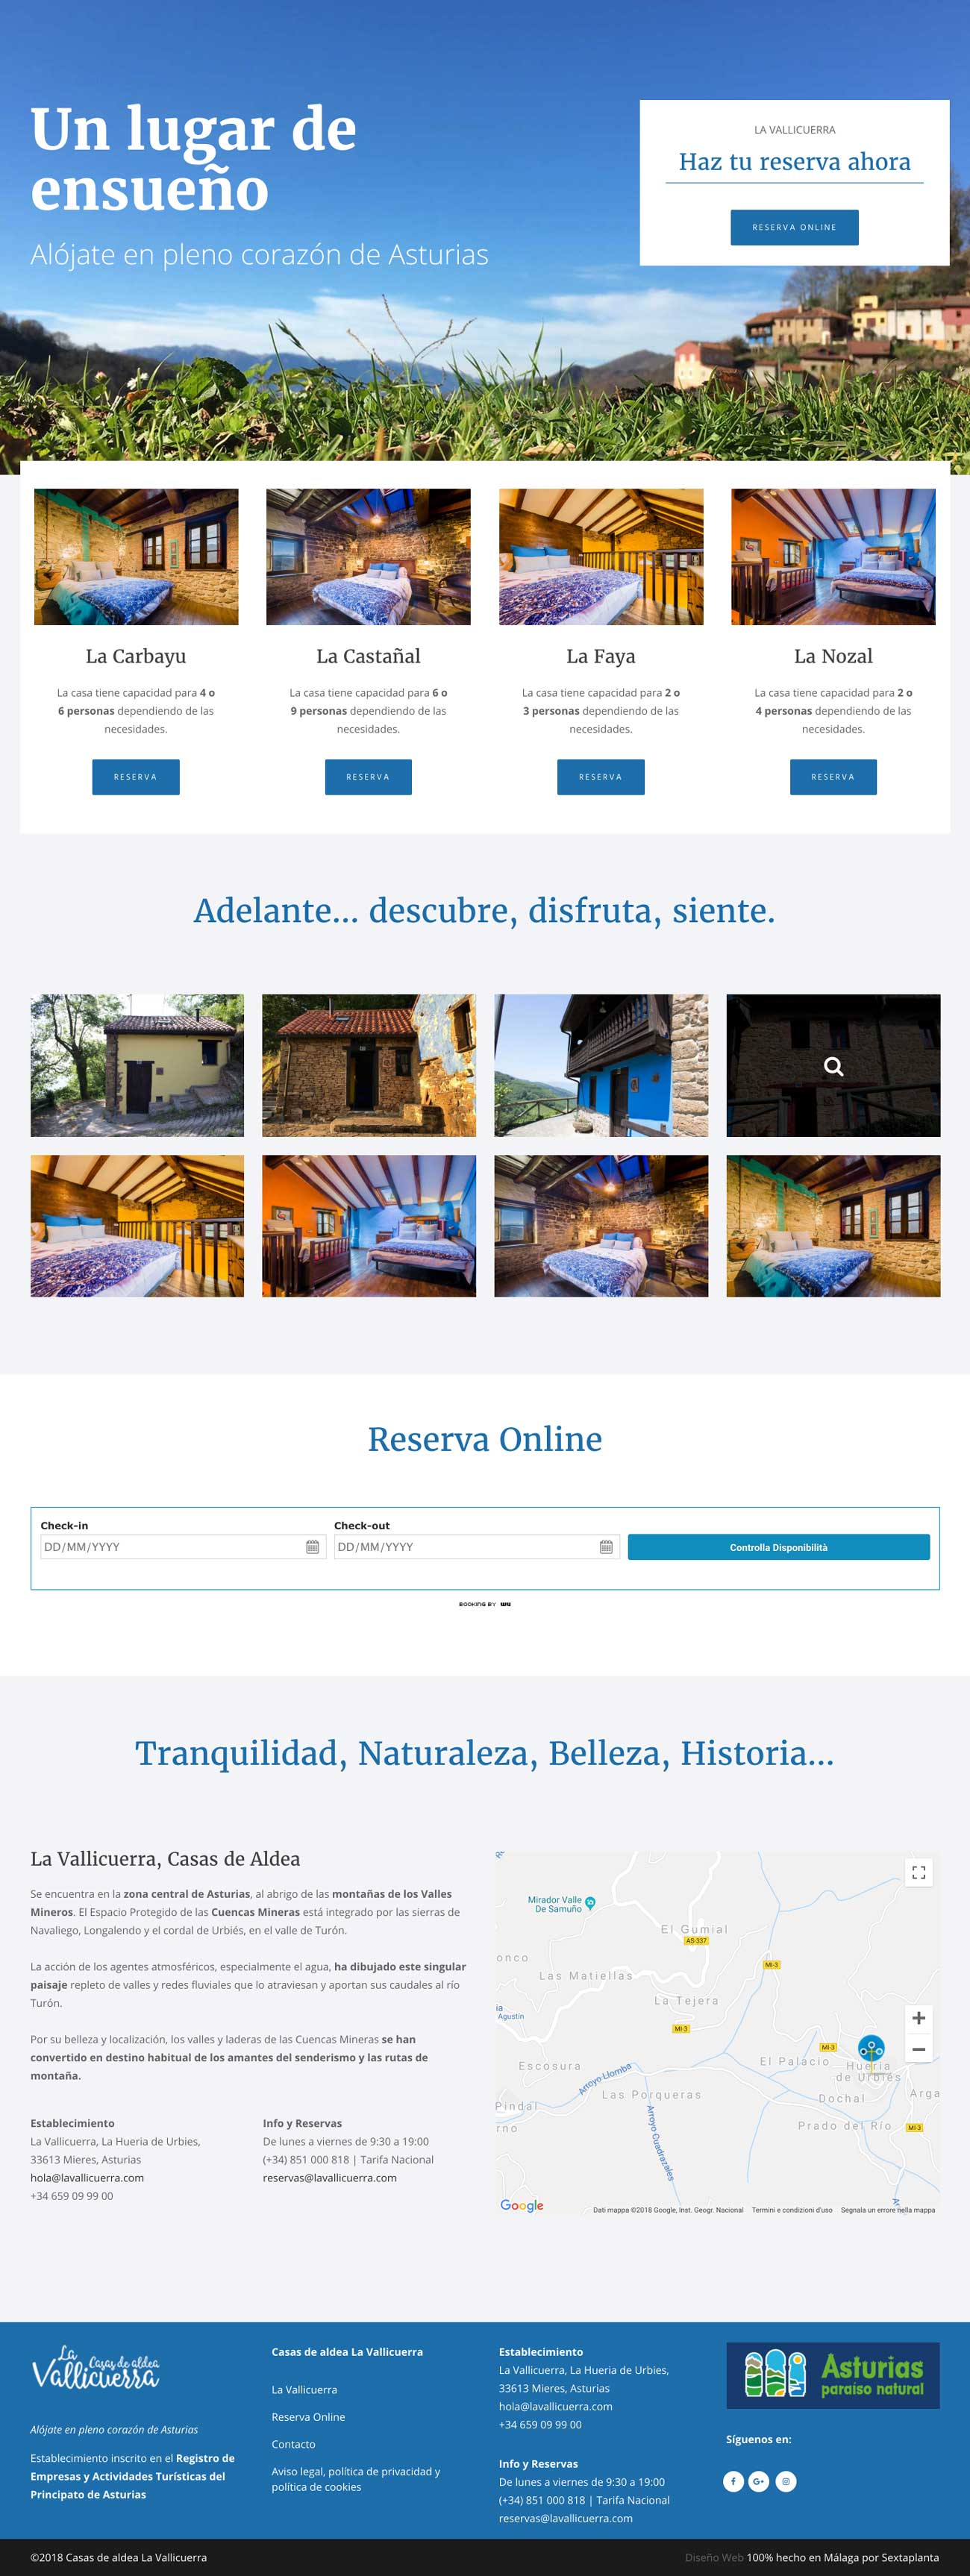 Diseño Web Casas de aldea La Vallicuerra